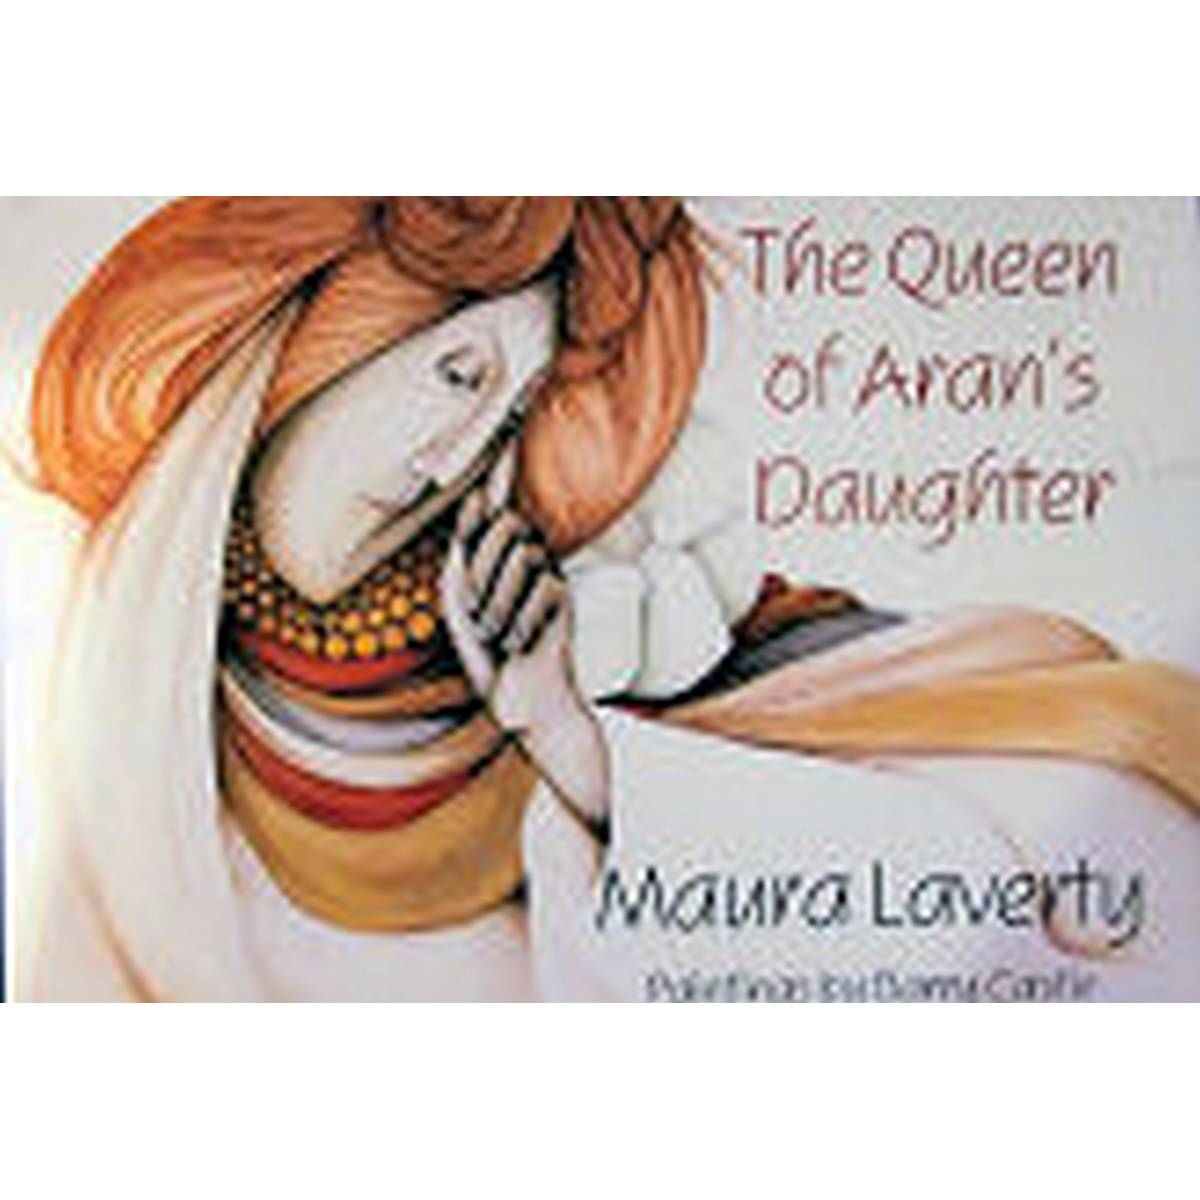 Queen of Aran's Daughter